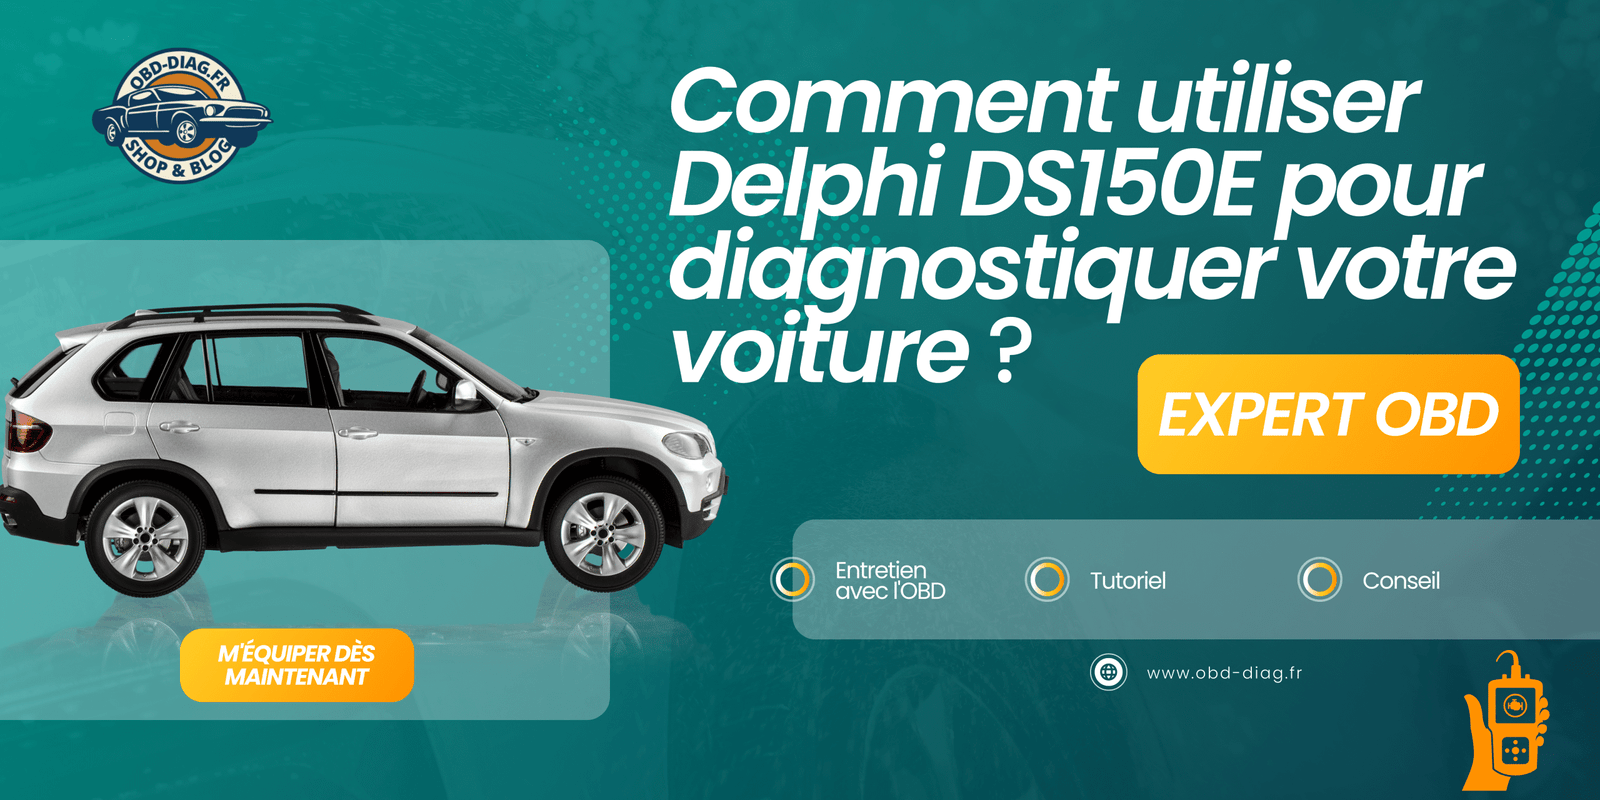 Comment utiliser Delphi DS150E pour diagnostiquer votre voiture